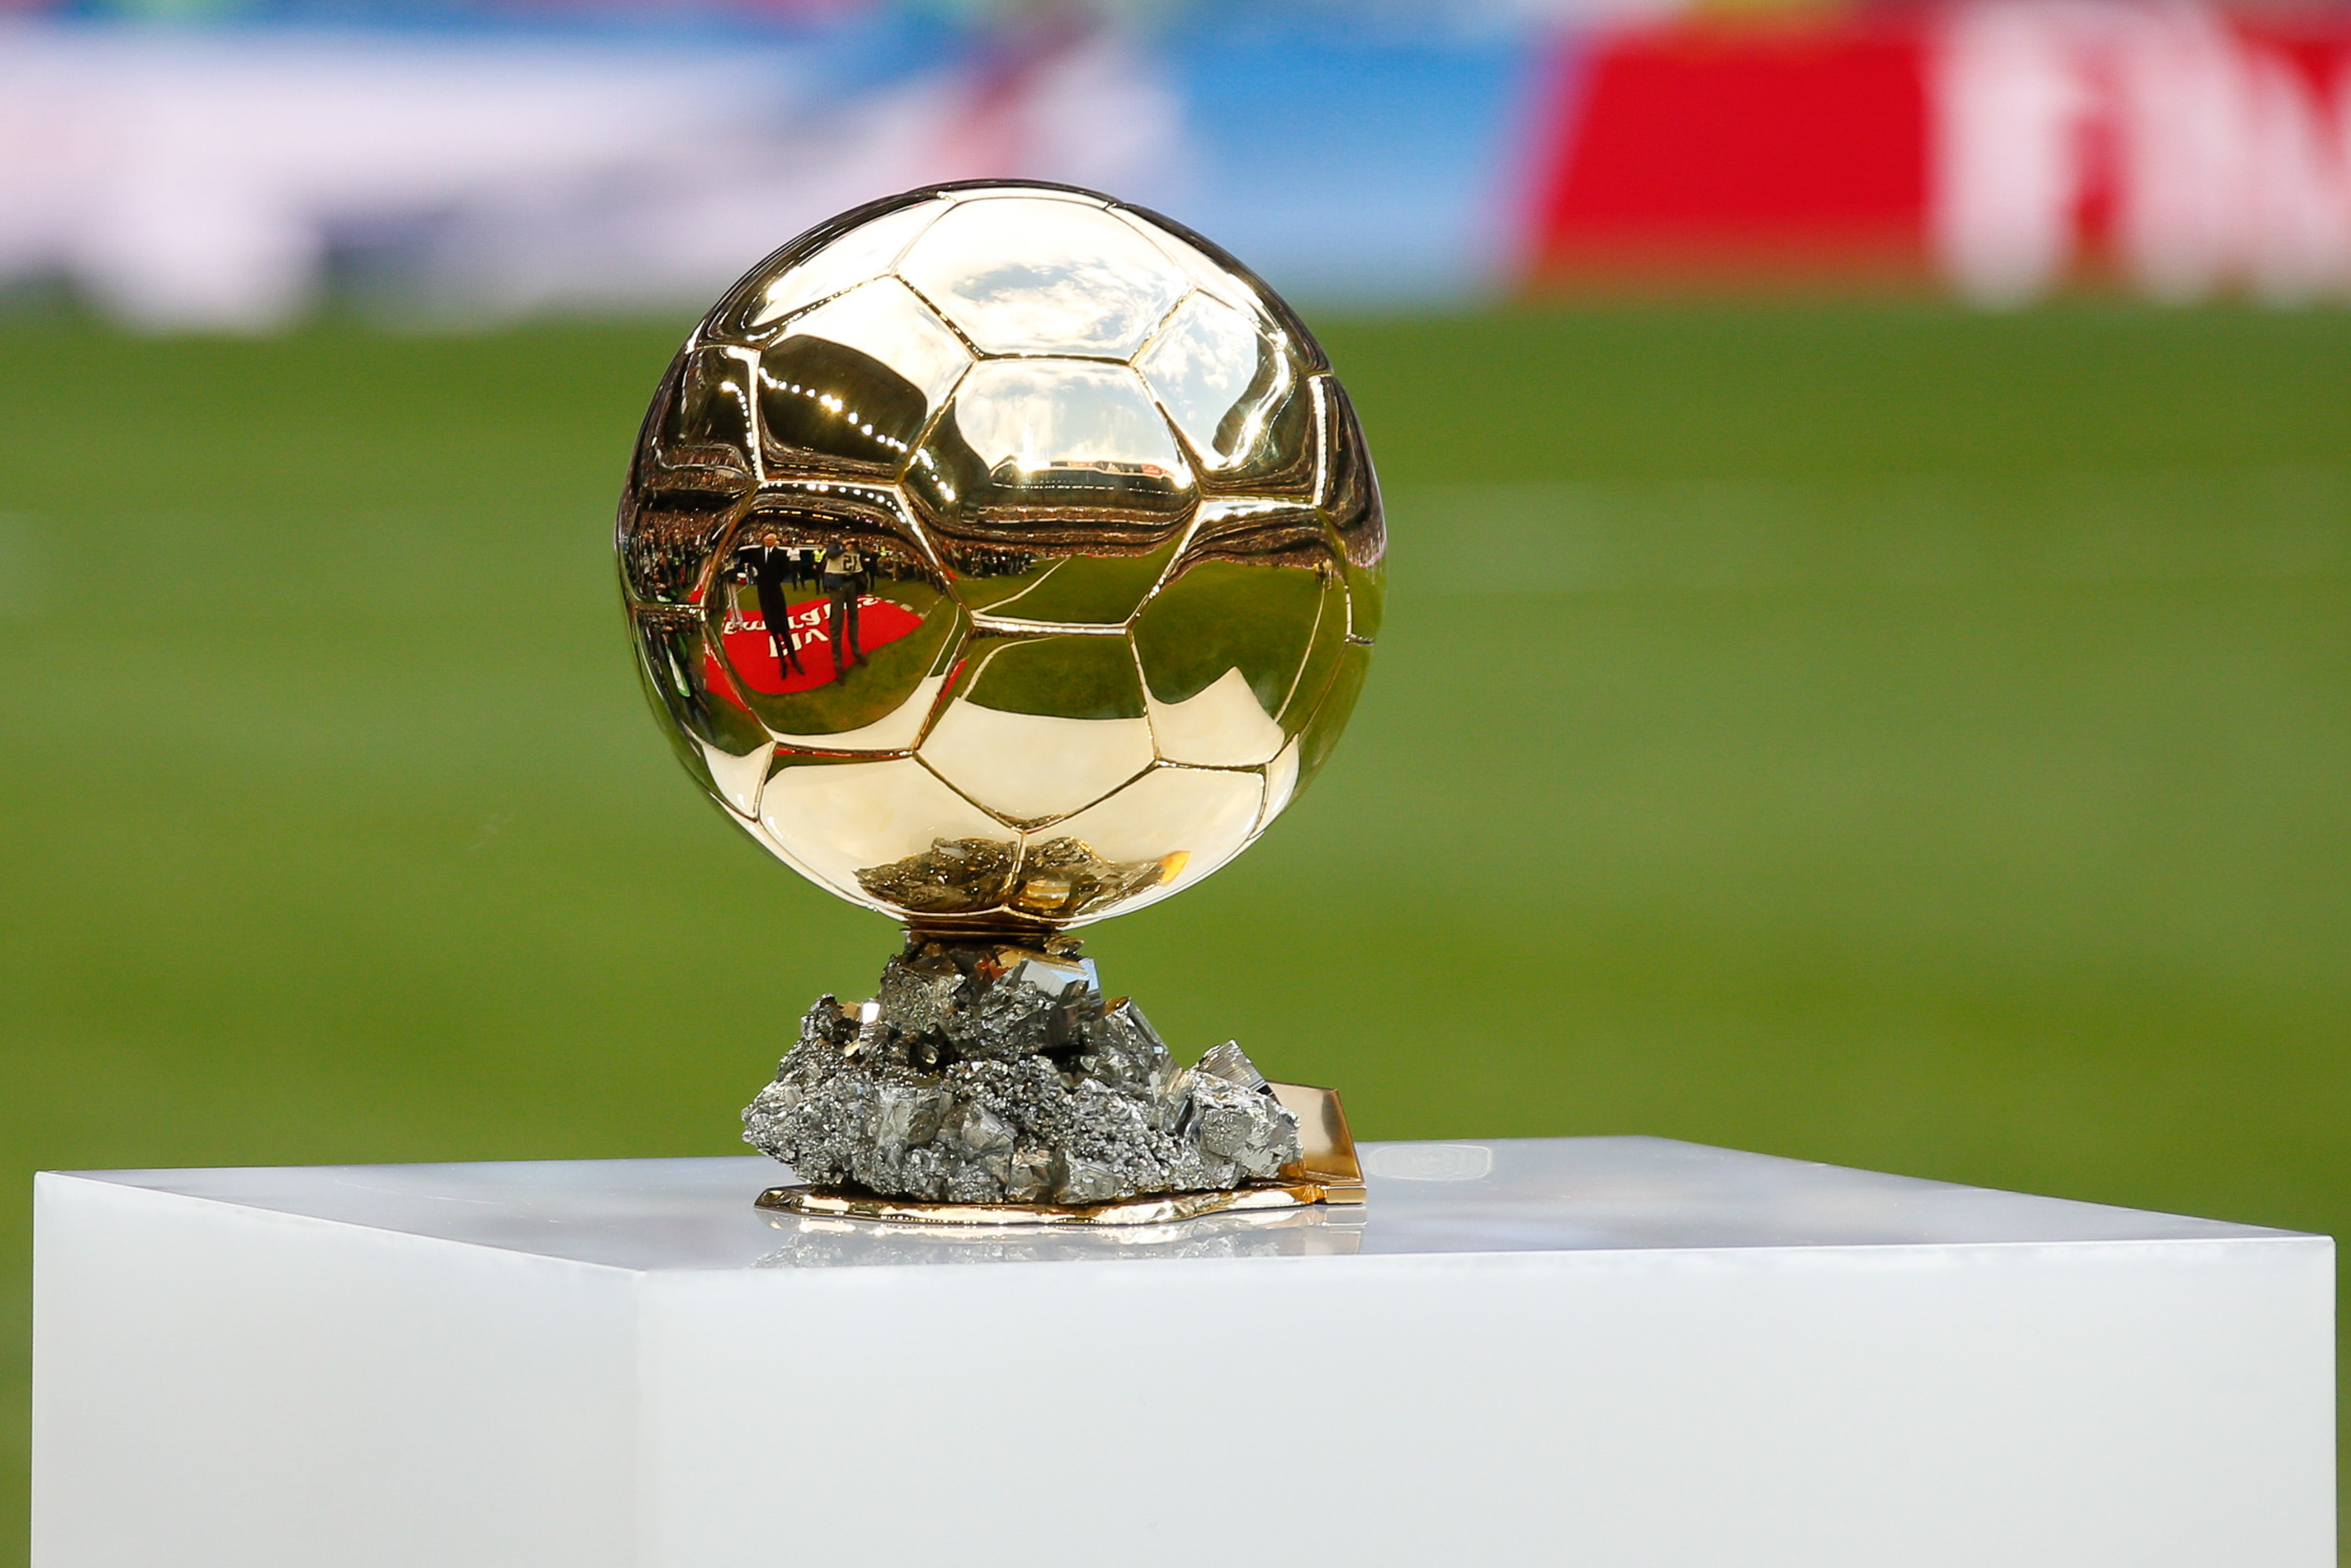 Football : le Ballon d'Or ne sera pas décerné en 2020, en raison